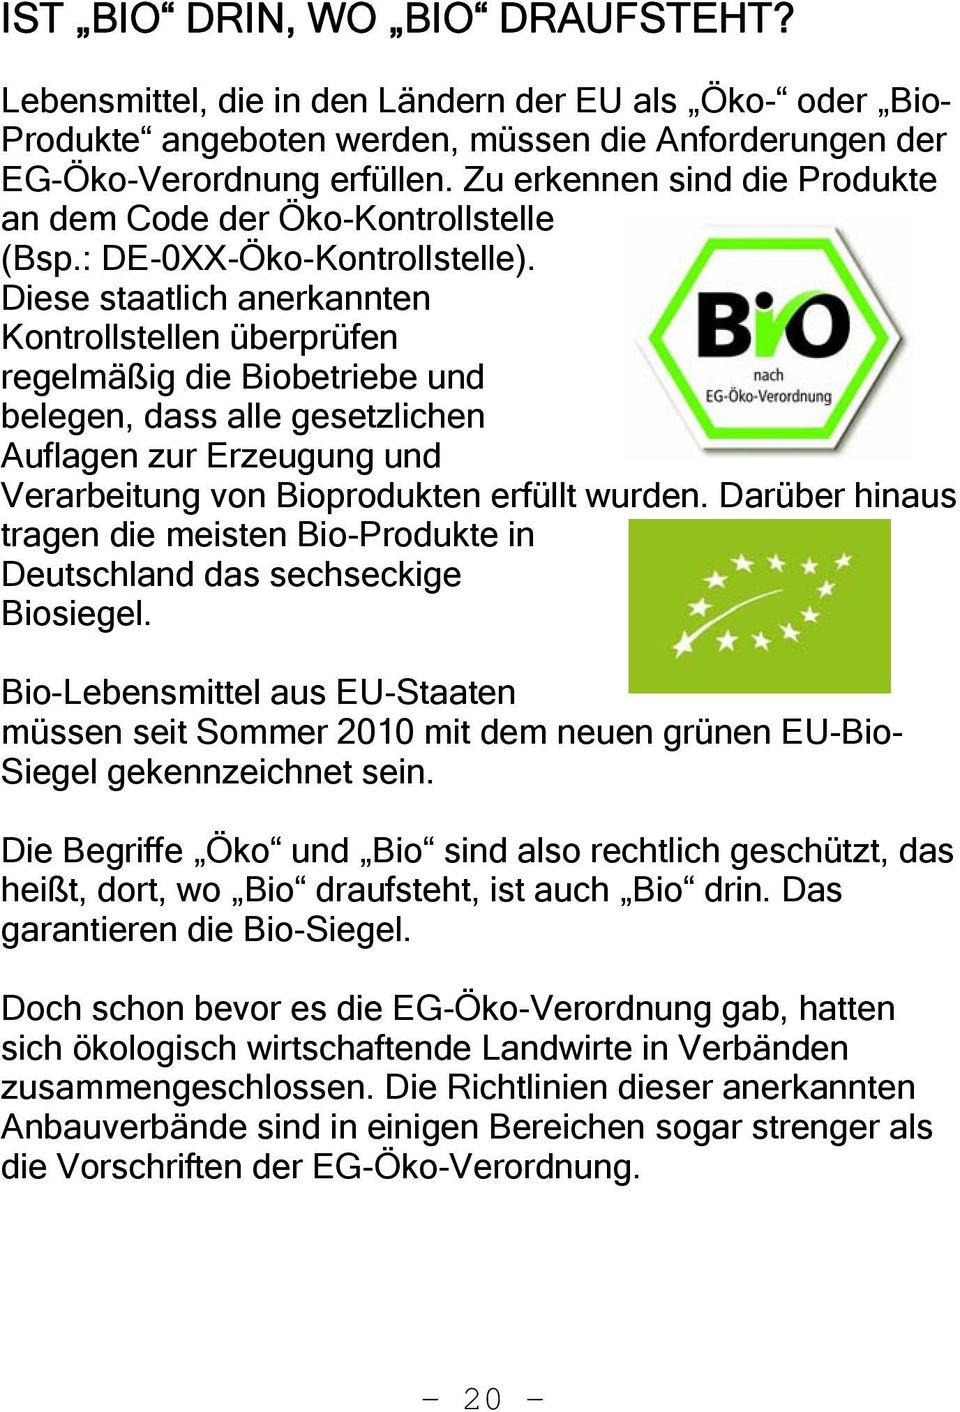 Diese staatlich anerkannten Kontrollstellen überprüfen regelmäßig die Biobetriebe und belegen, dass alle gesetzlichen Auflagen zur Erzeugung und Verarbeitung von Bioprodukten erfüllt wurden.